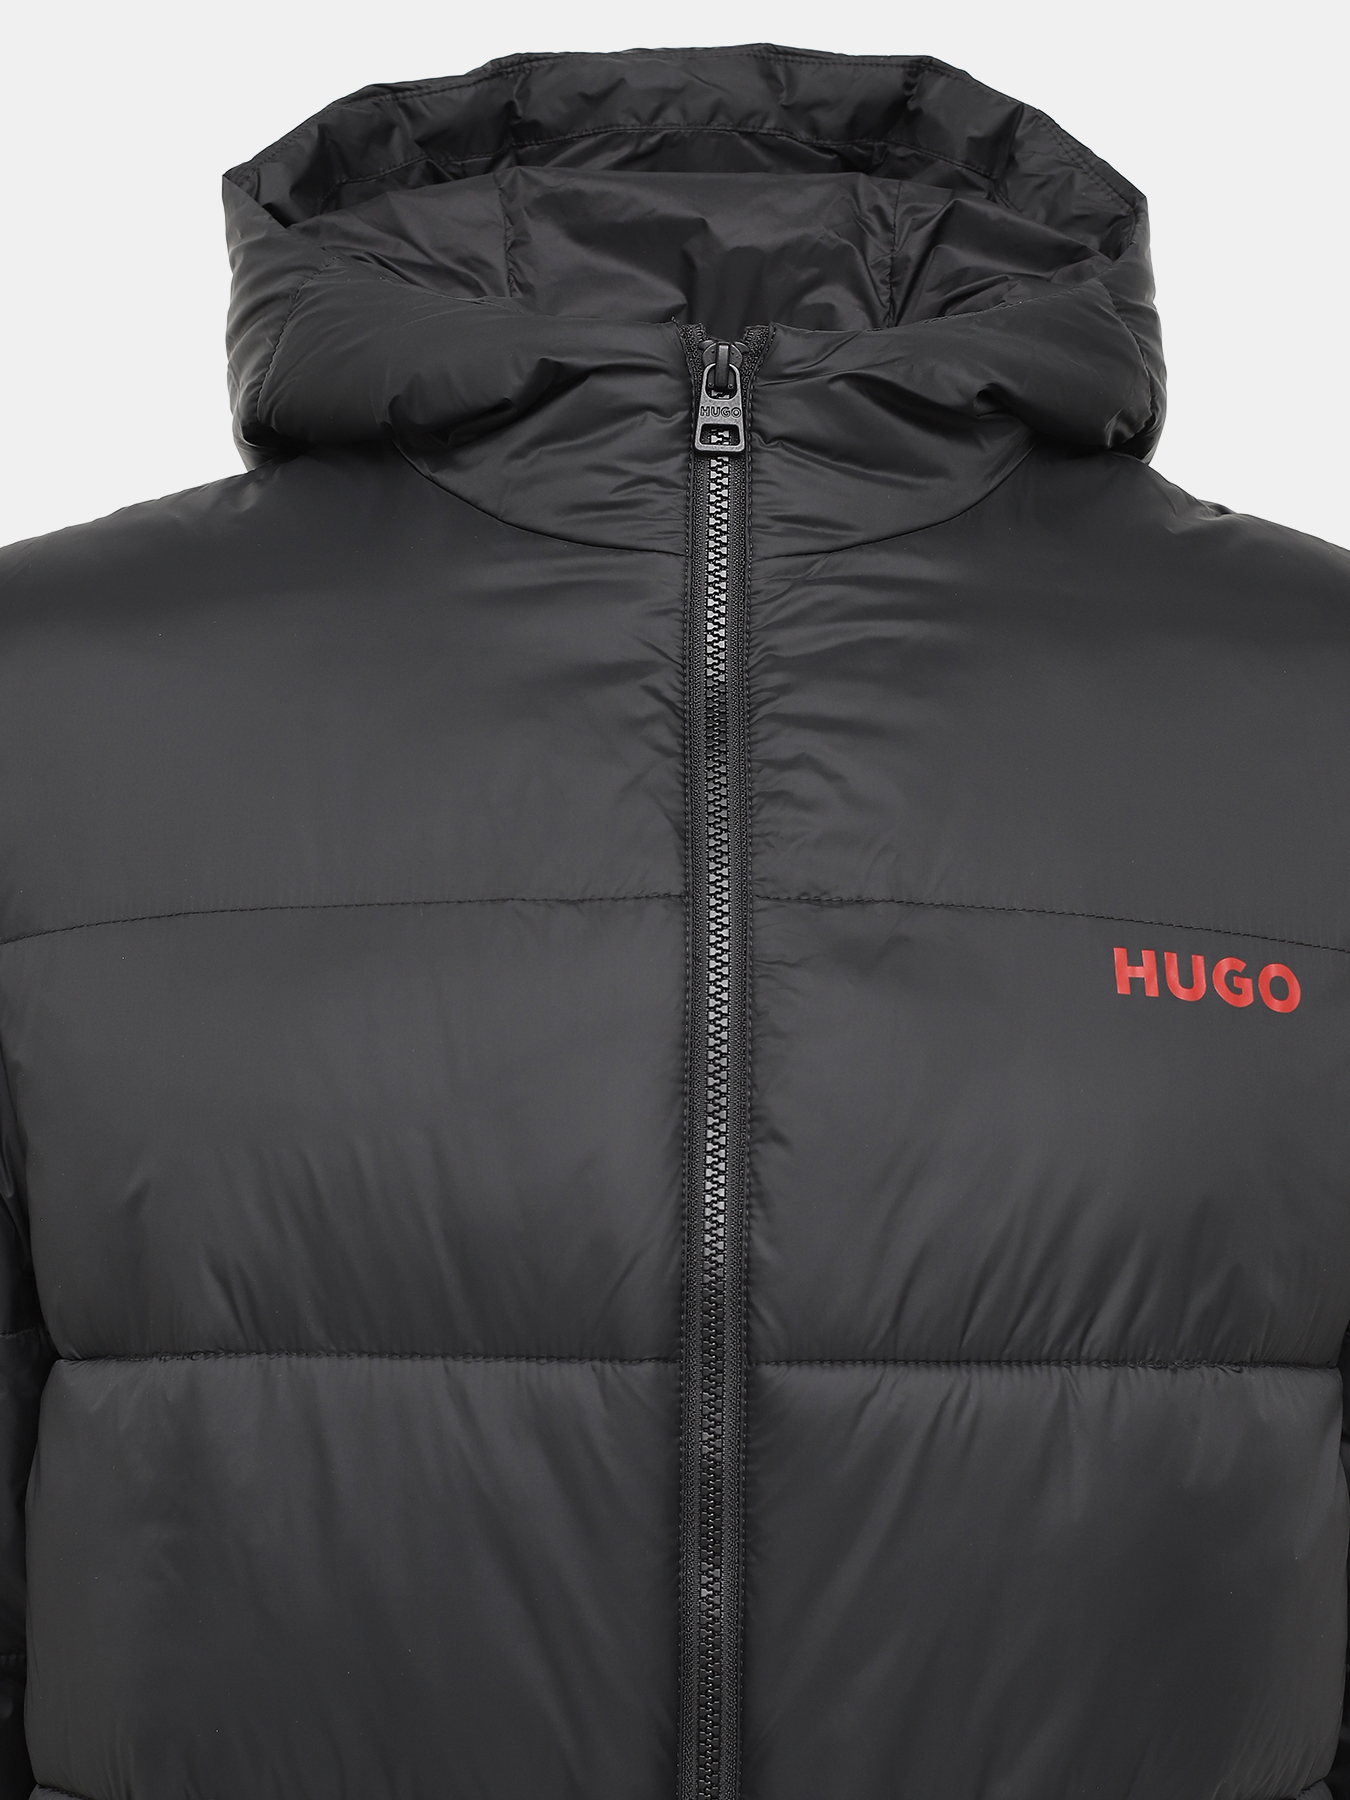 Удлиненная куртка Mati HUGO 426043-043, цвет черный, размер 48-50 - фото 5